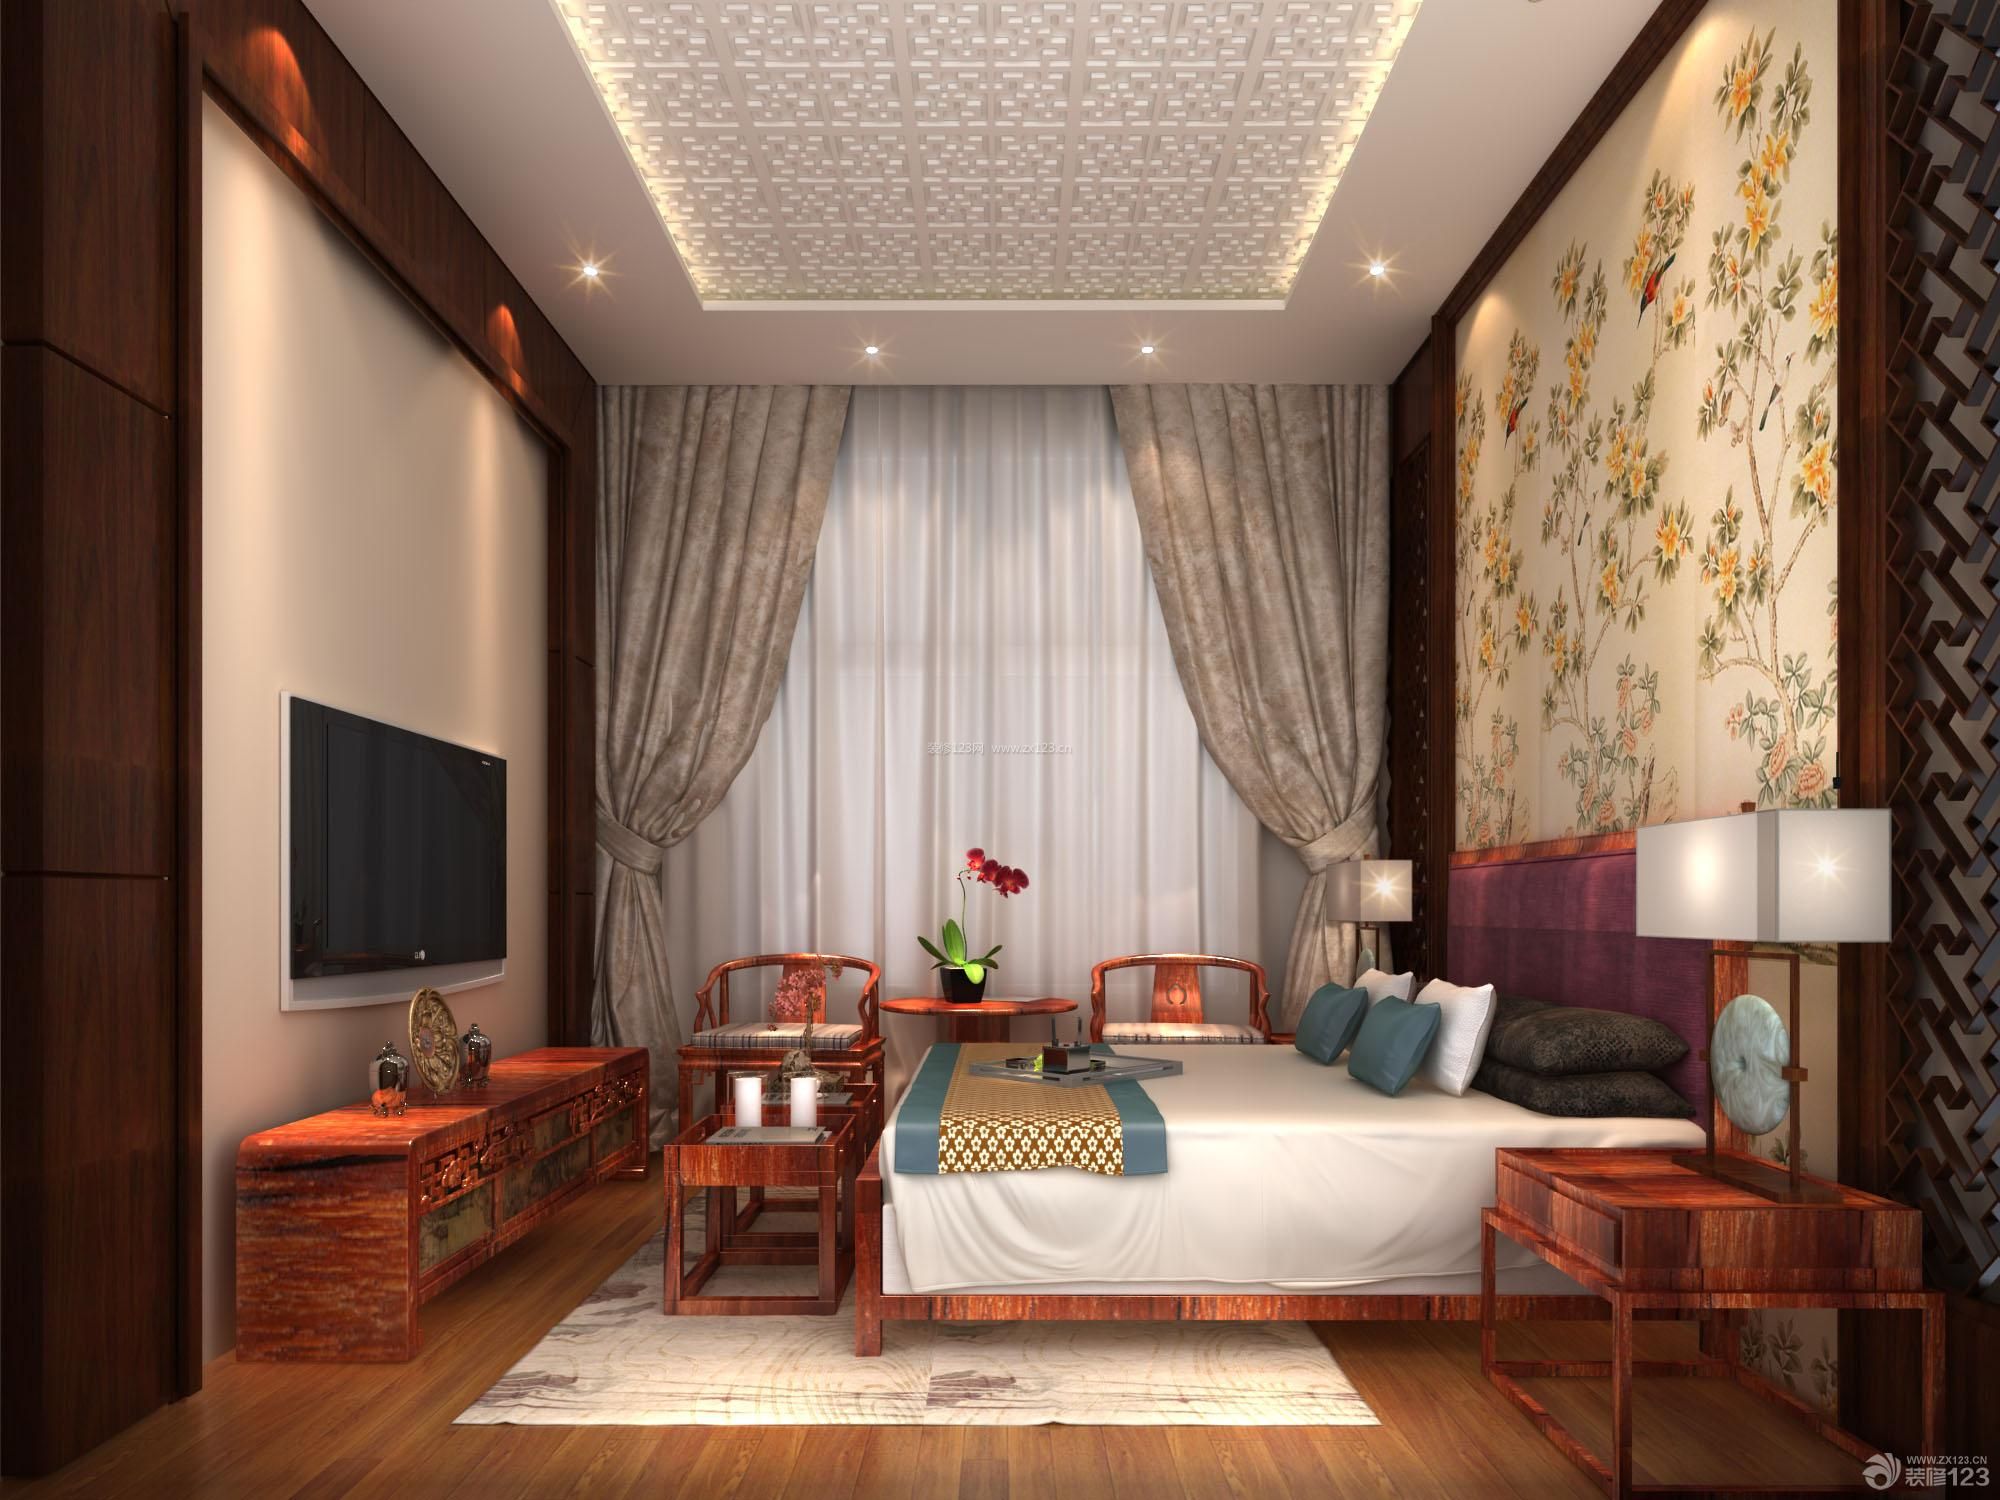 新中式风格 三室两厅装修设计 大卧室 卧室颜色搭配 床头背景墙 大花壁纸 